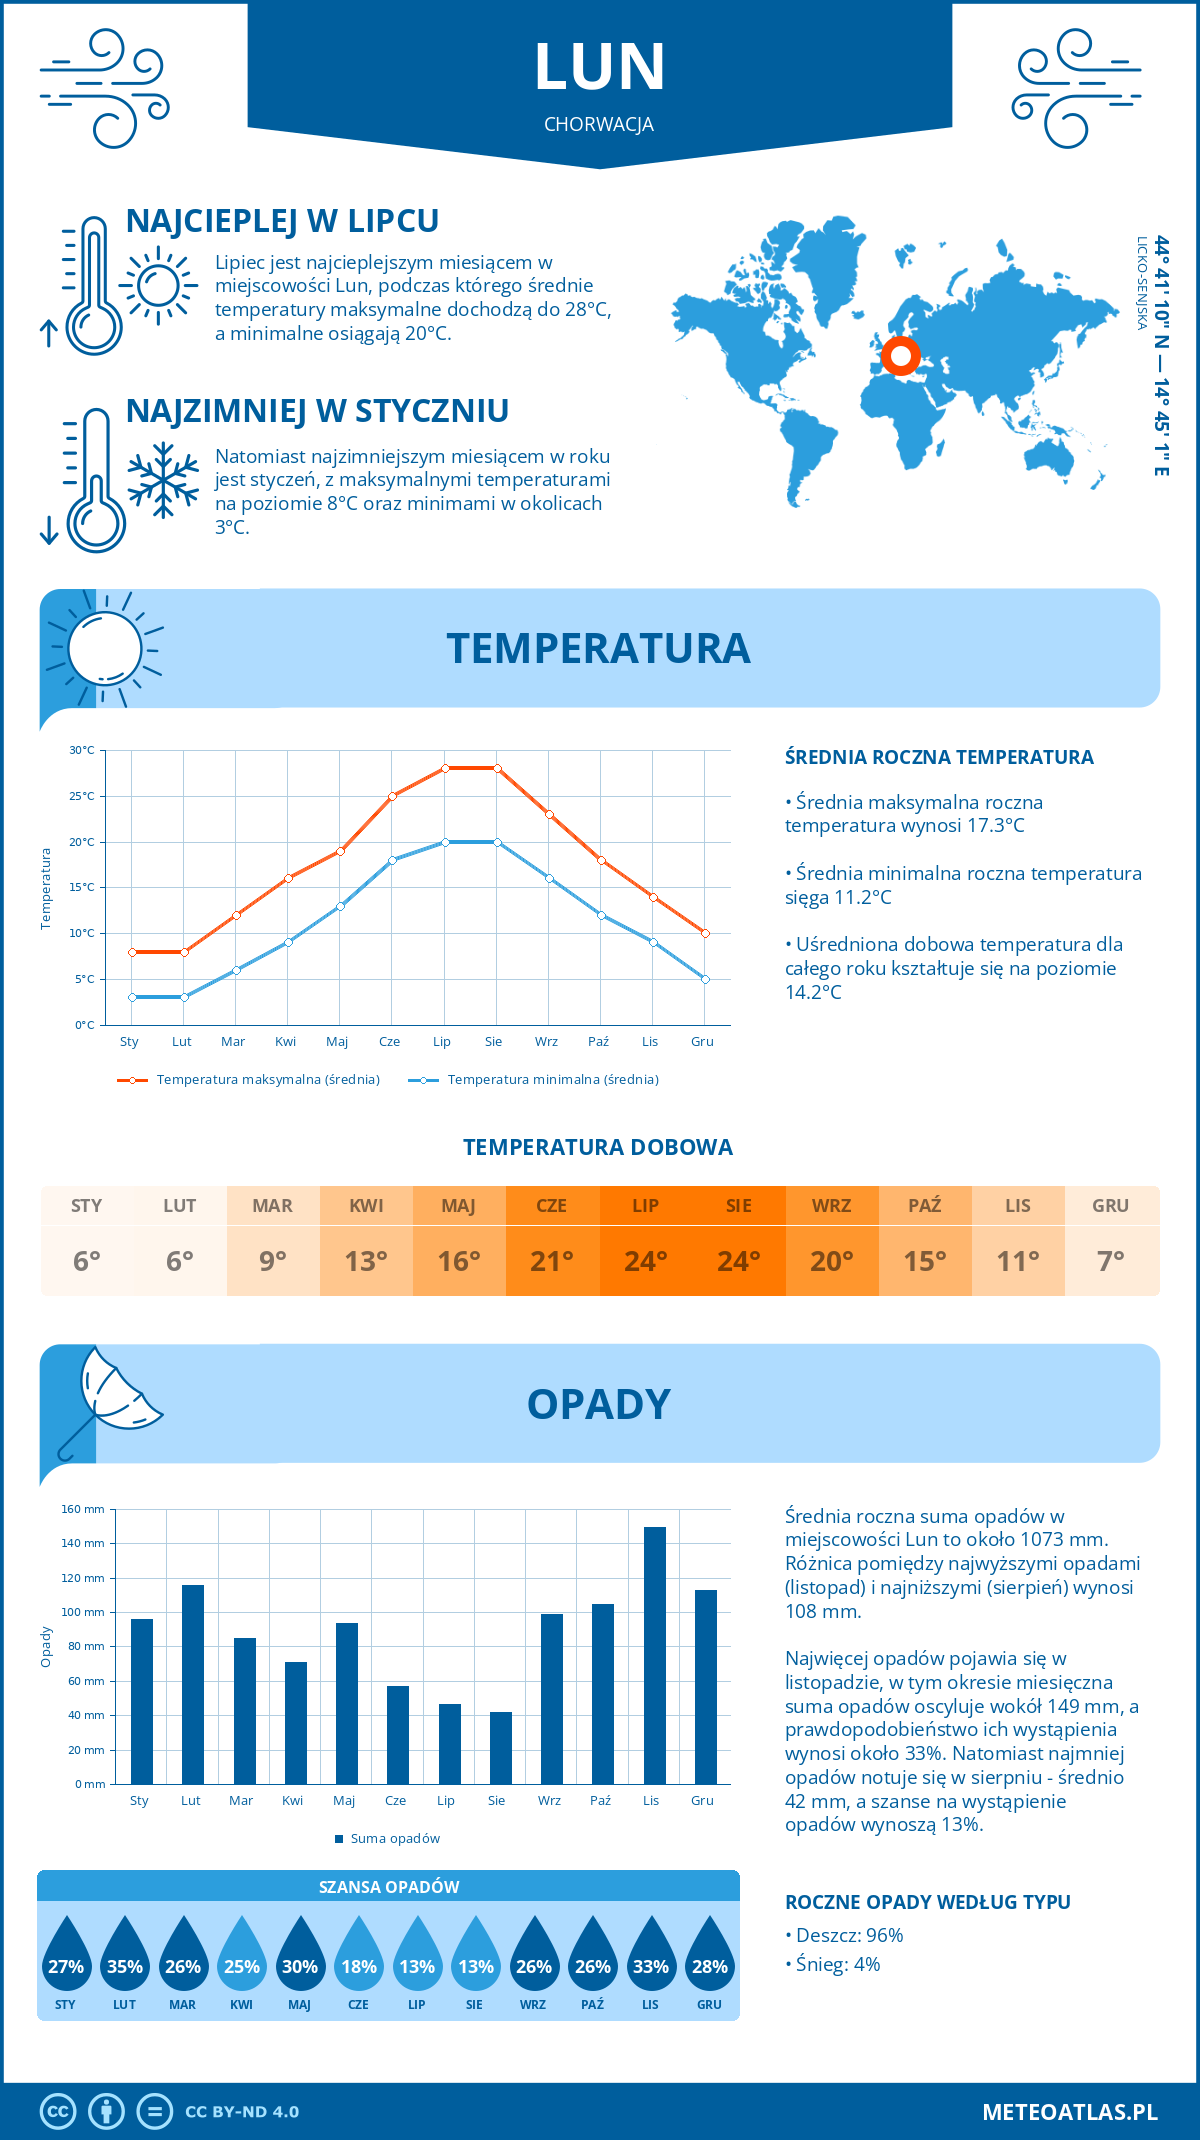 Pogoda Lun (Chorwacja). Temperatura oraz opady.